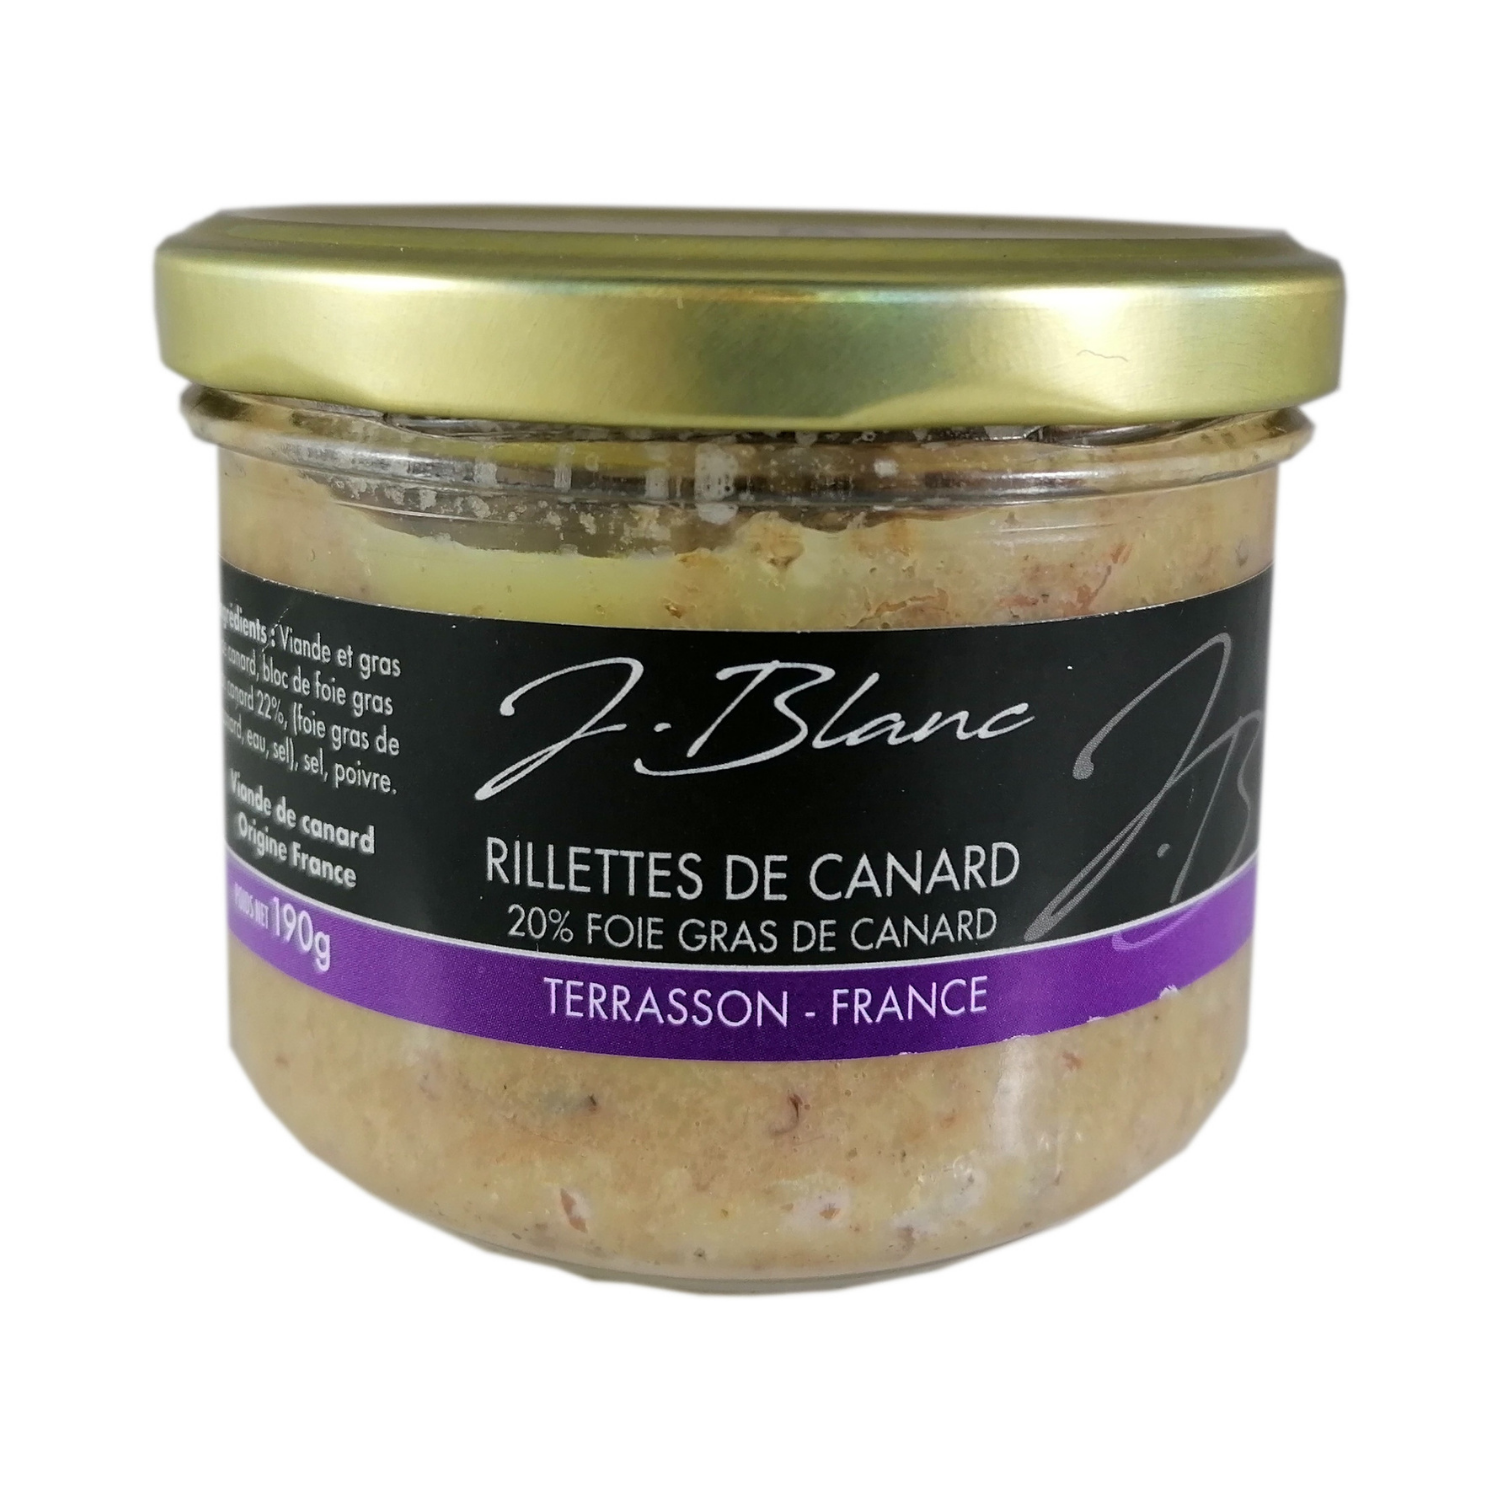 produit Rillettes de canard 20% foie gras de canard 190g j.blanc